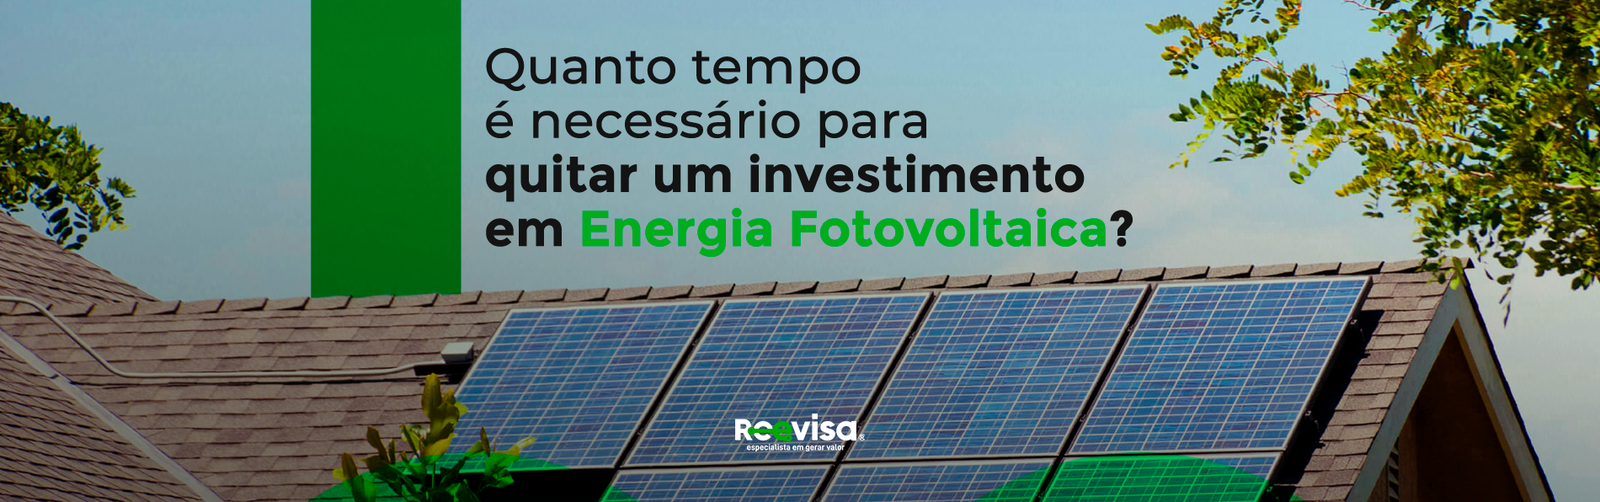 Payback: como quitar um investimento em energia fotovoltaica?